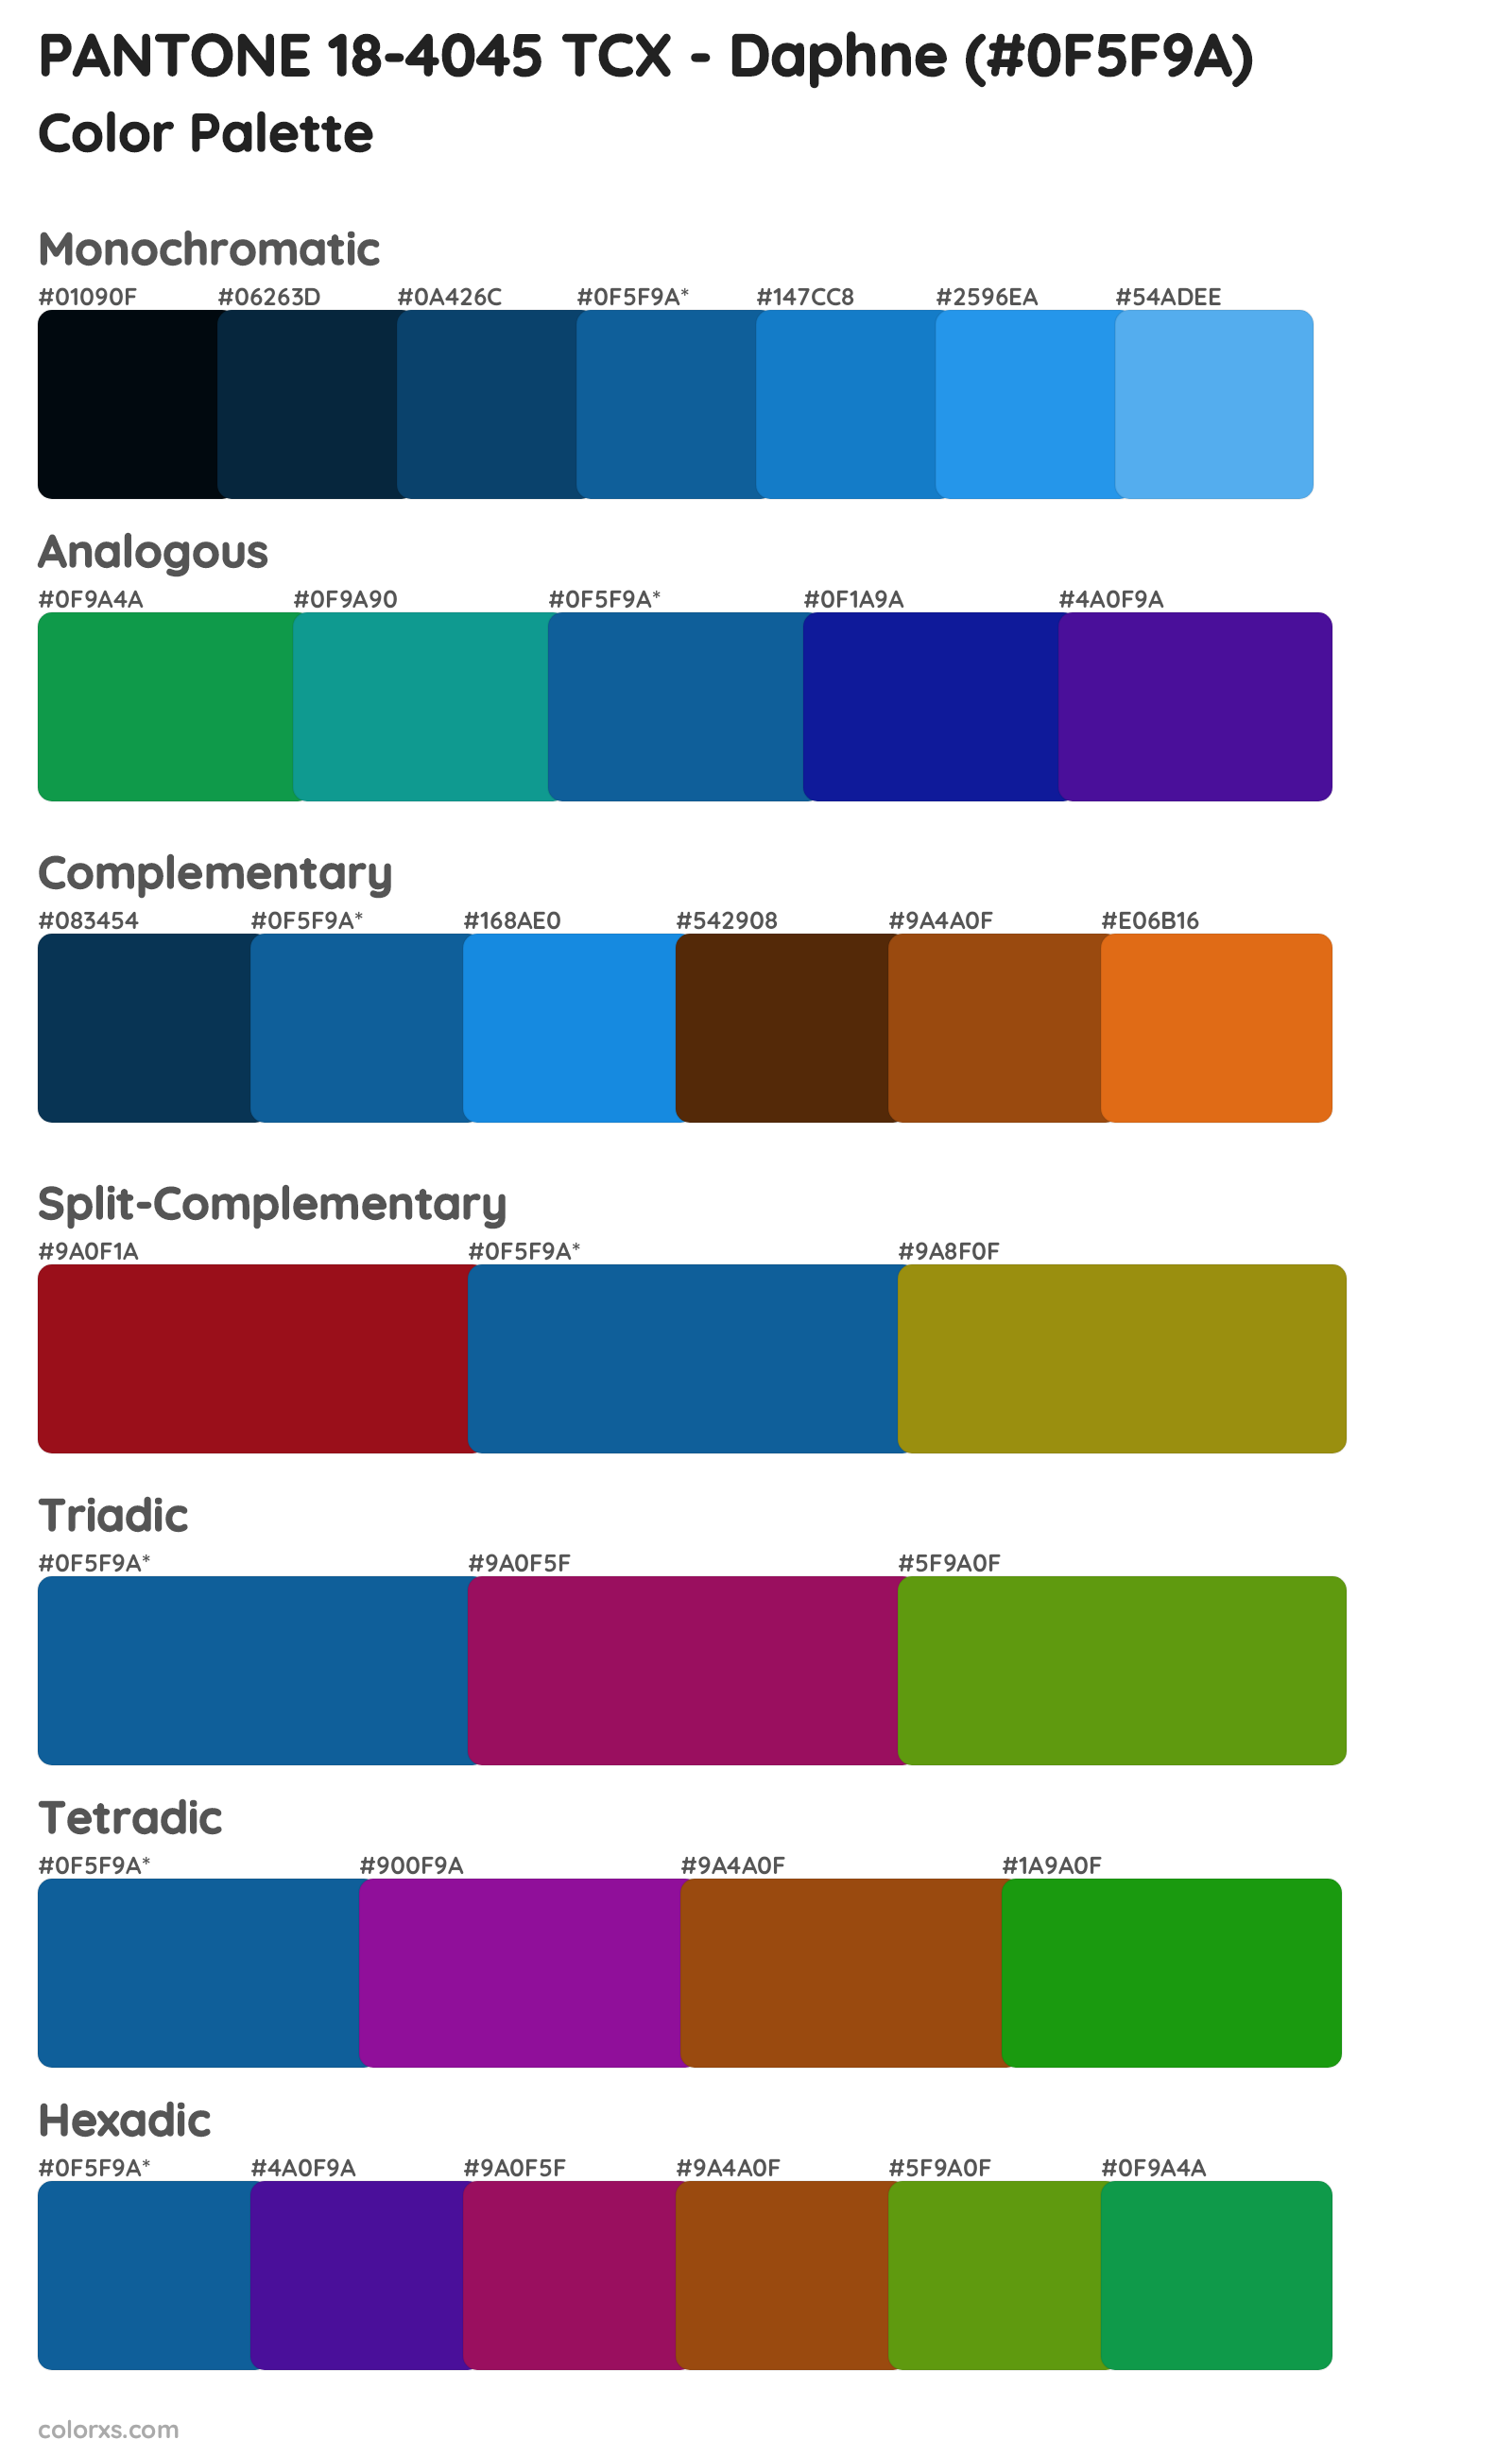 PANTONE 18-4045 TCX - Daphne Color Scheme Palettes